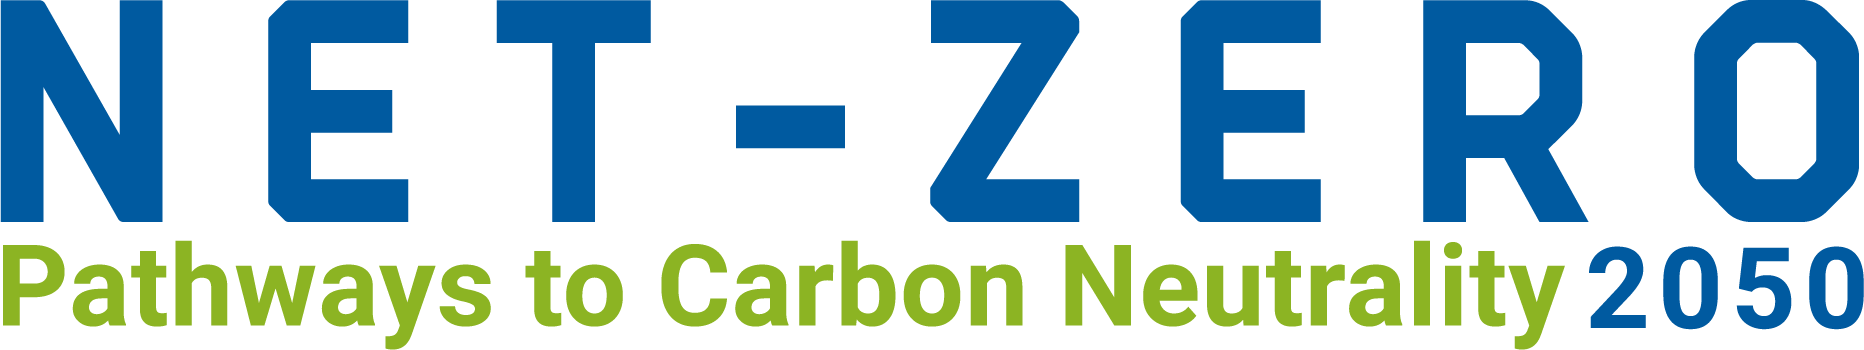 Net-Zero Pathways to Carbon Neutrality 2050